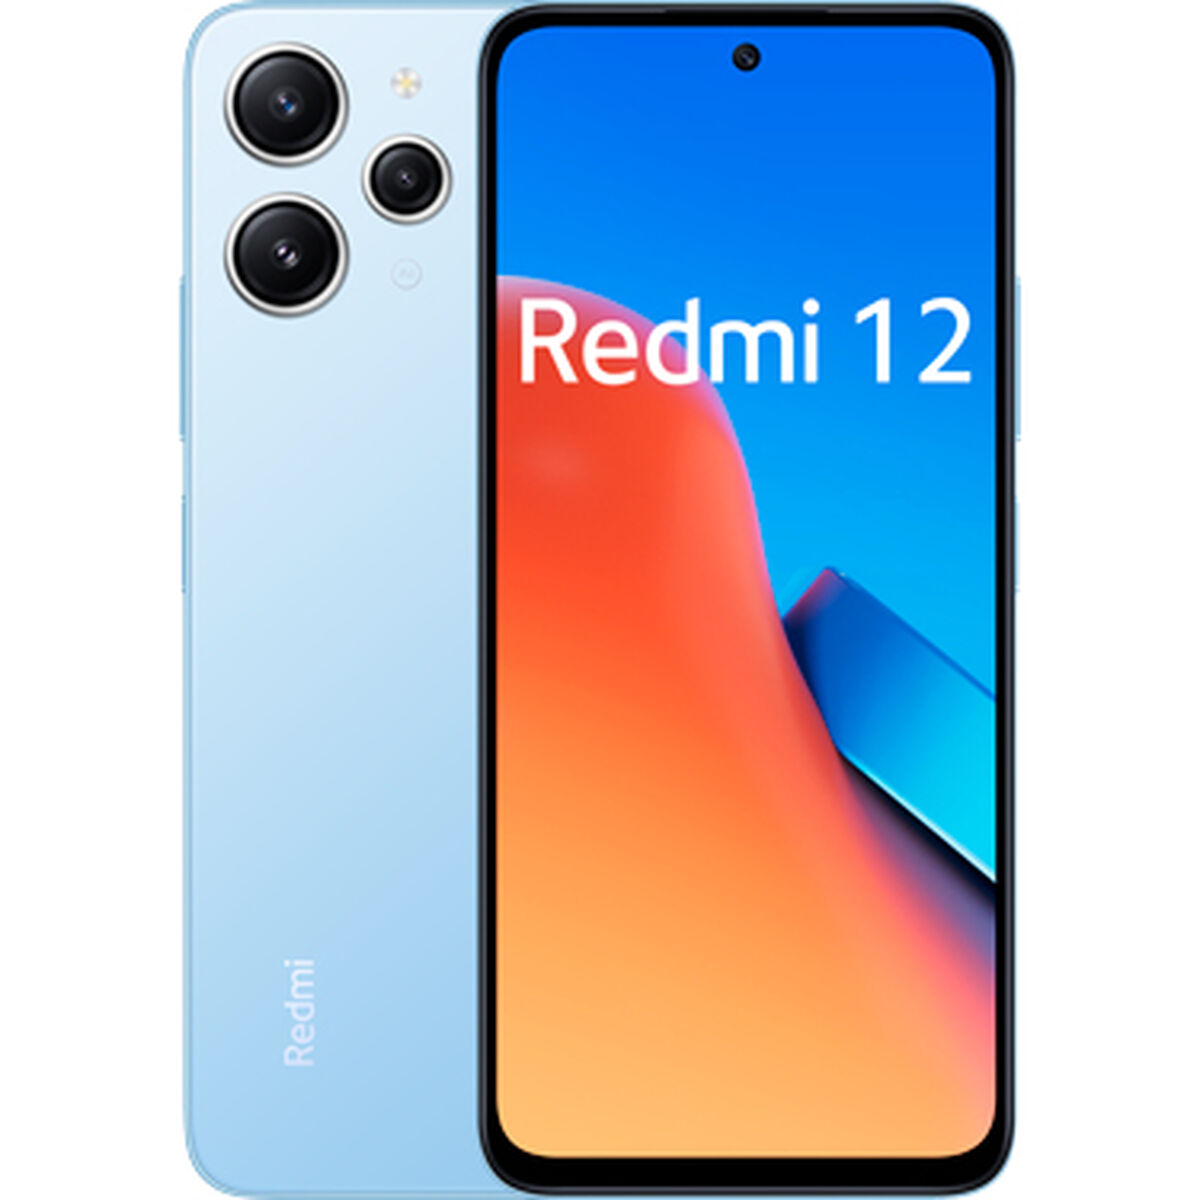 Smartphone Xiaomi REDMI 12 Blau Celeste 8 GB RAM 256 GB - CA International 